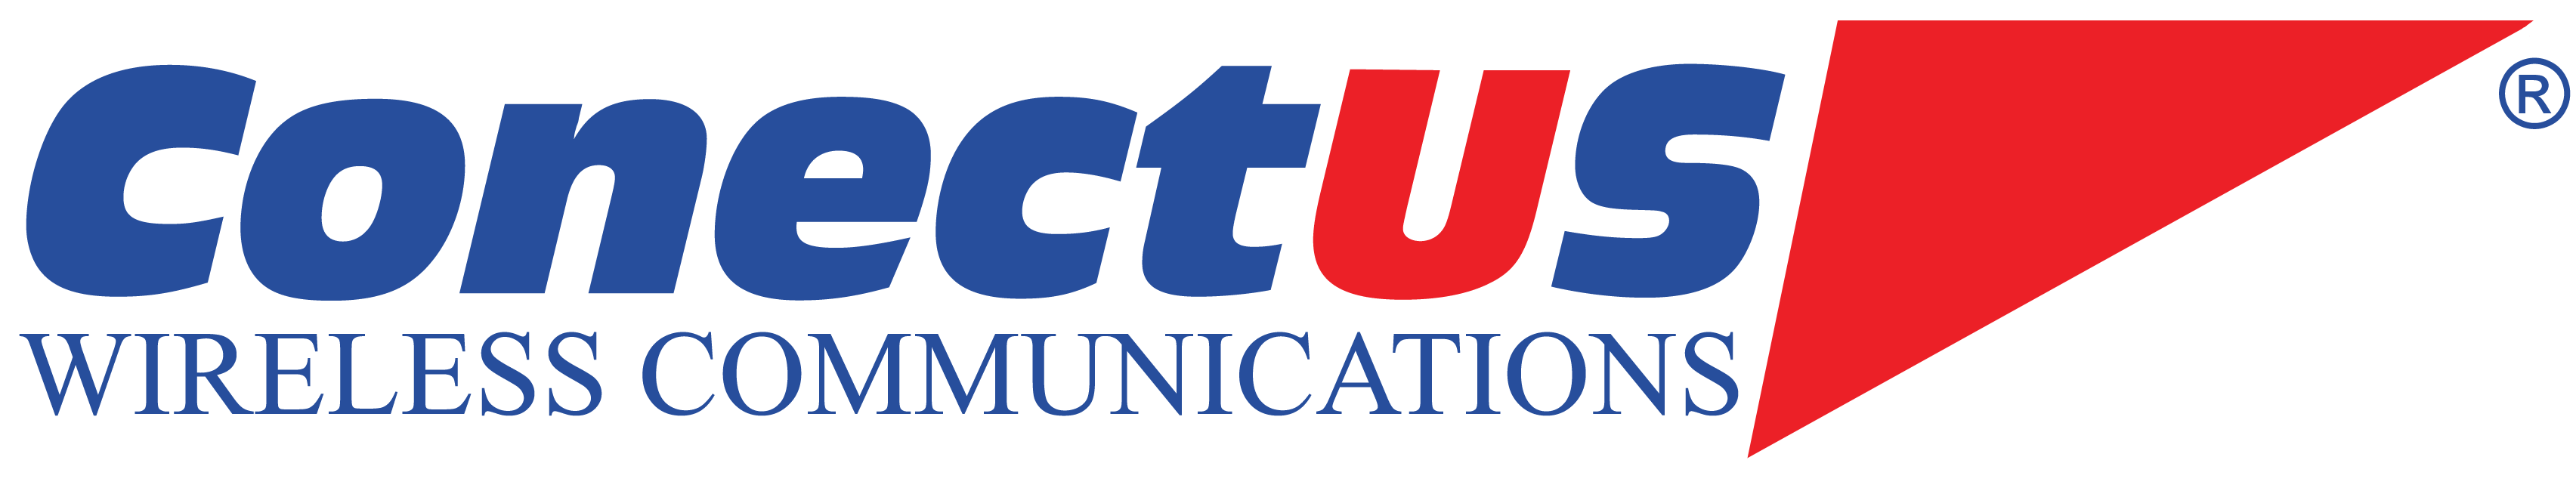 ConectUS logo